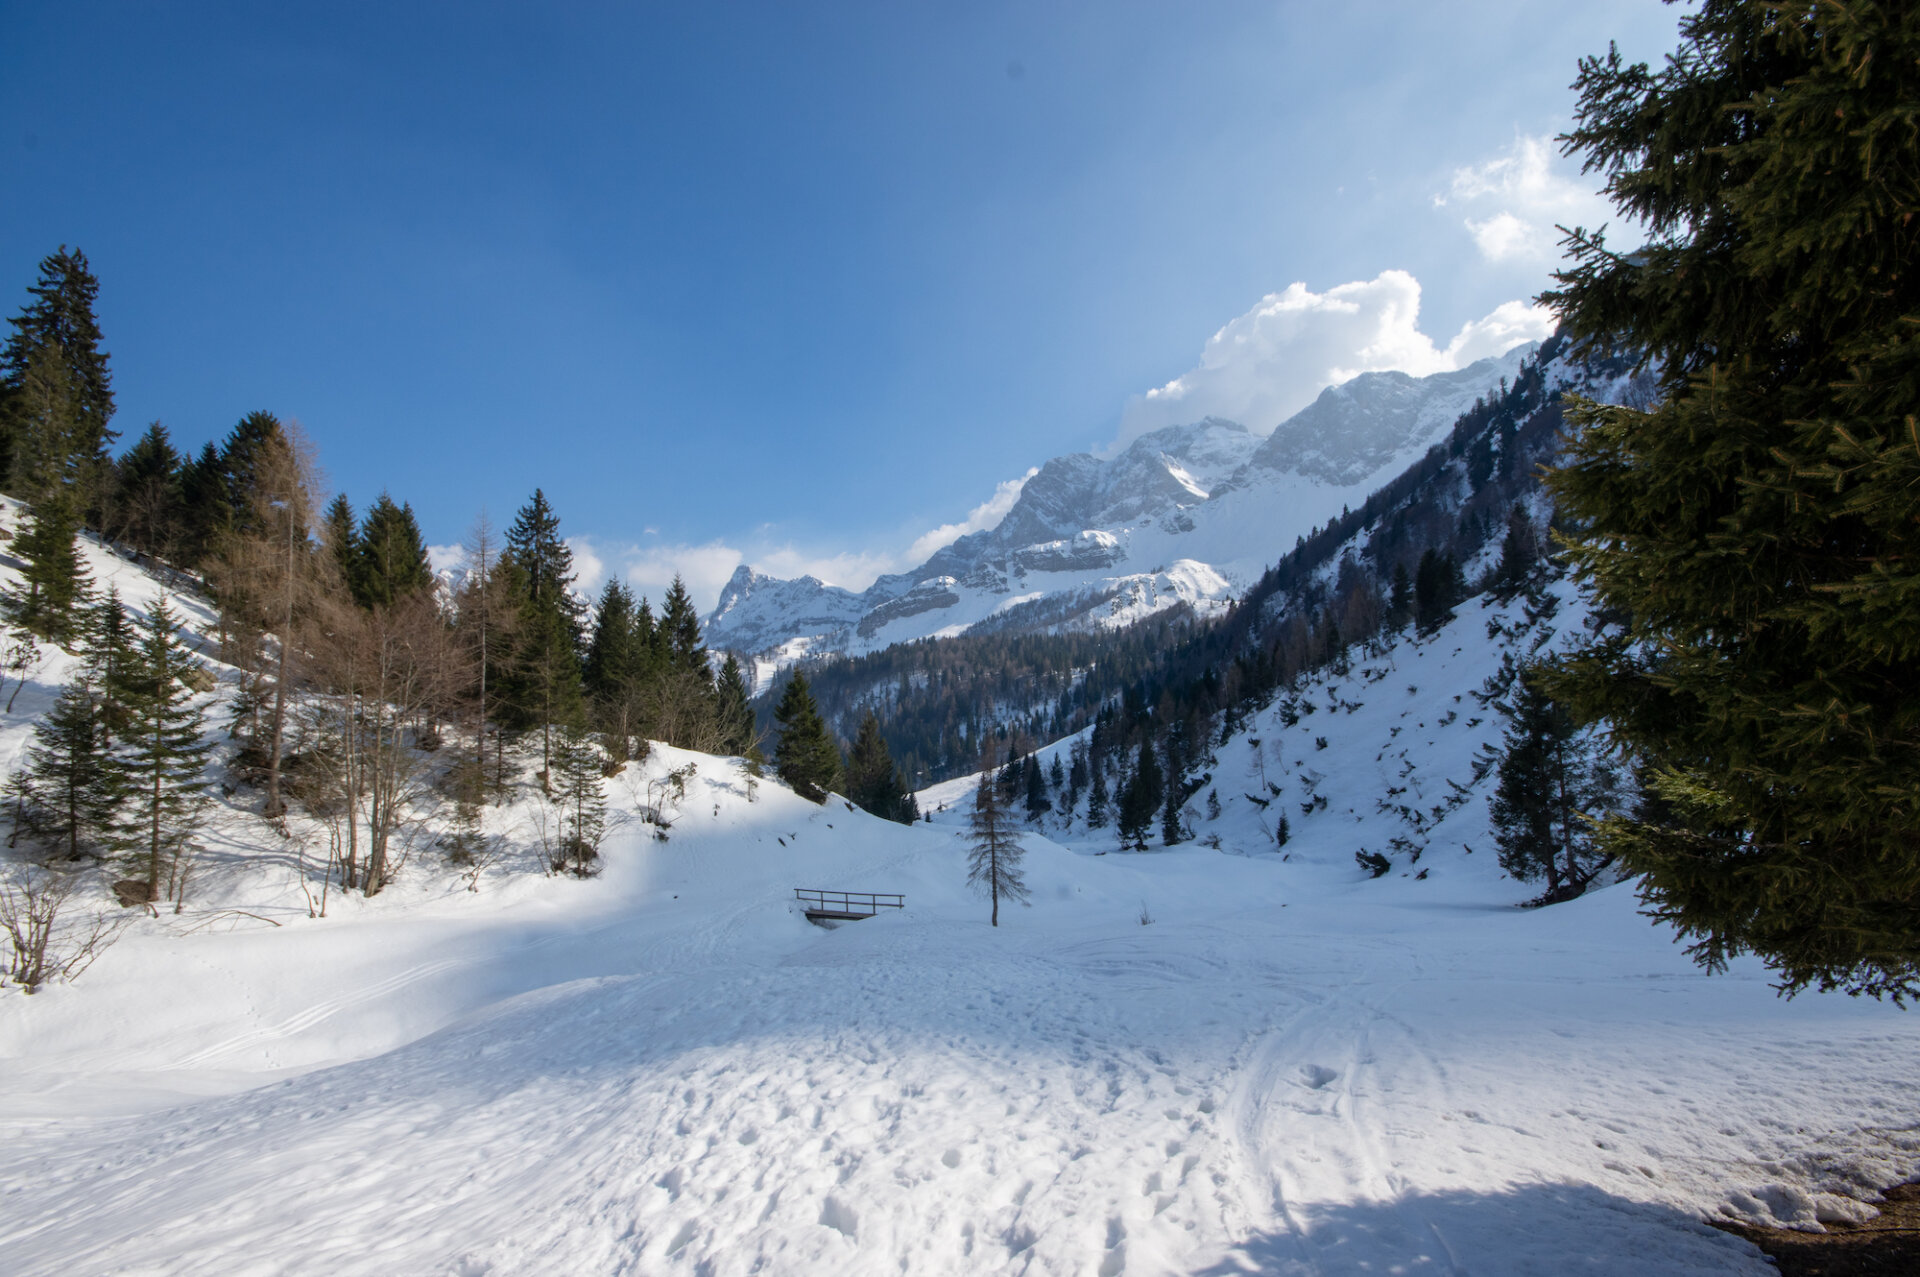 4 - Gita al rifugio Alpe Corte, lago Branchino e passo dei laghi gemelli online